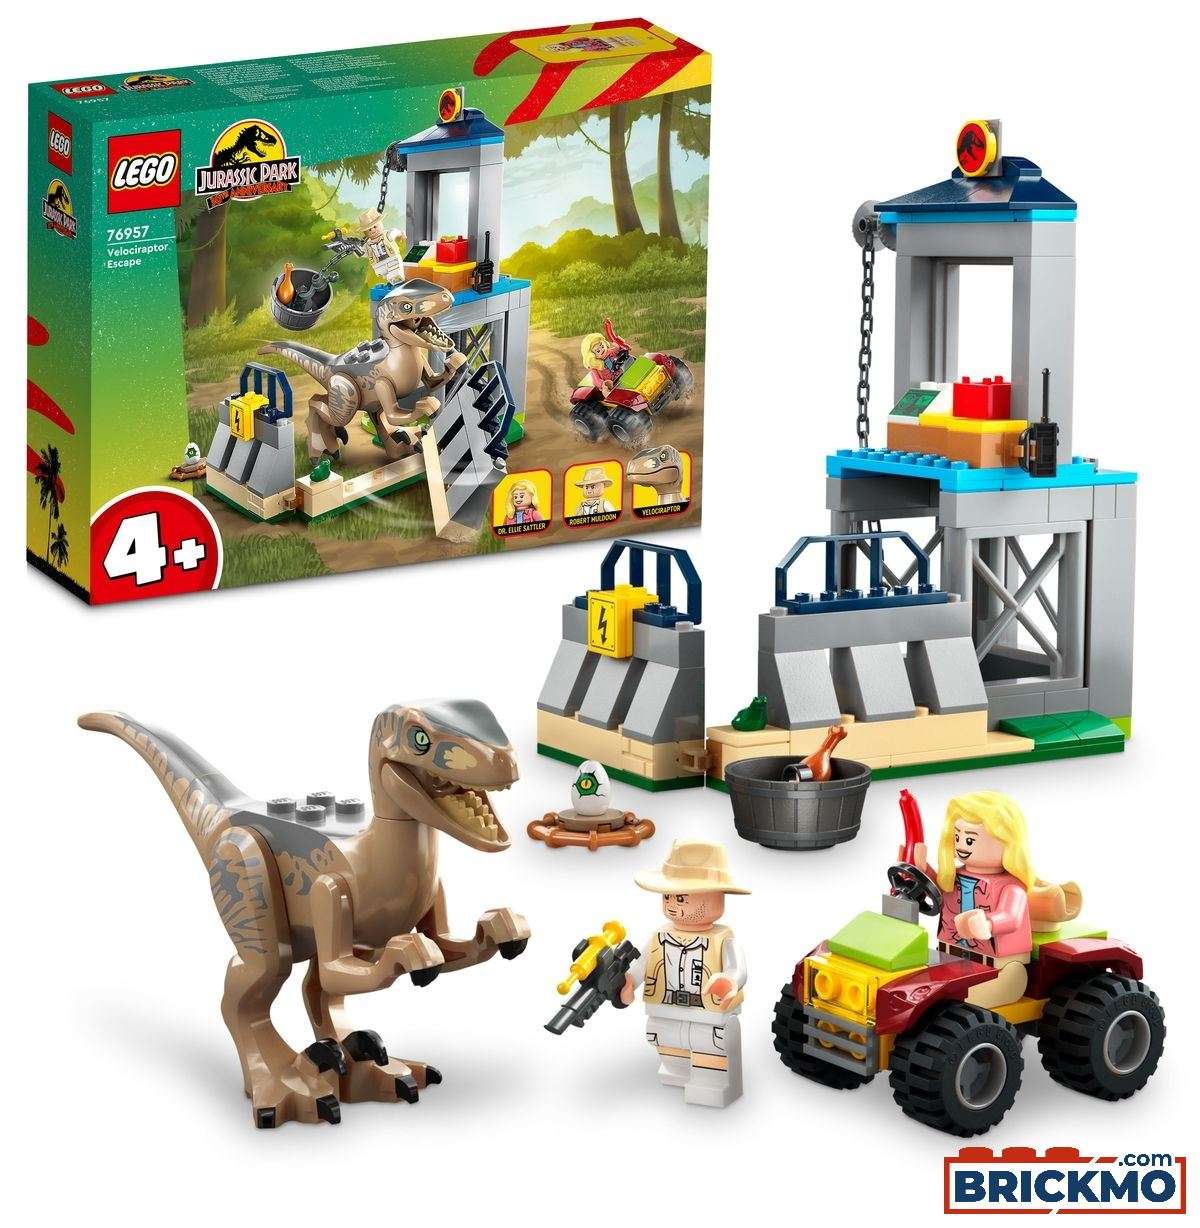 LEGO Jurassic World 76957 Velociraptor Escape 76957